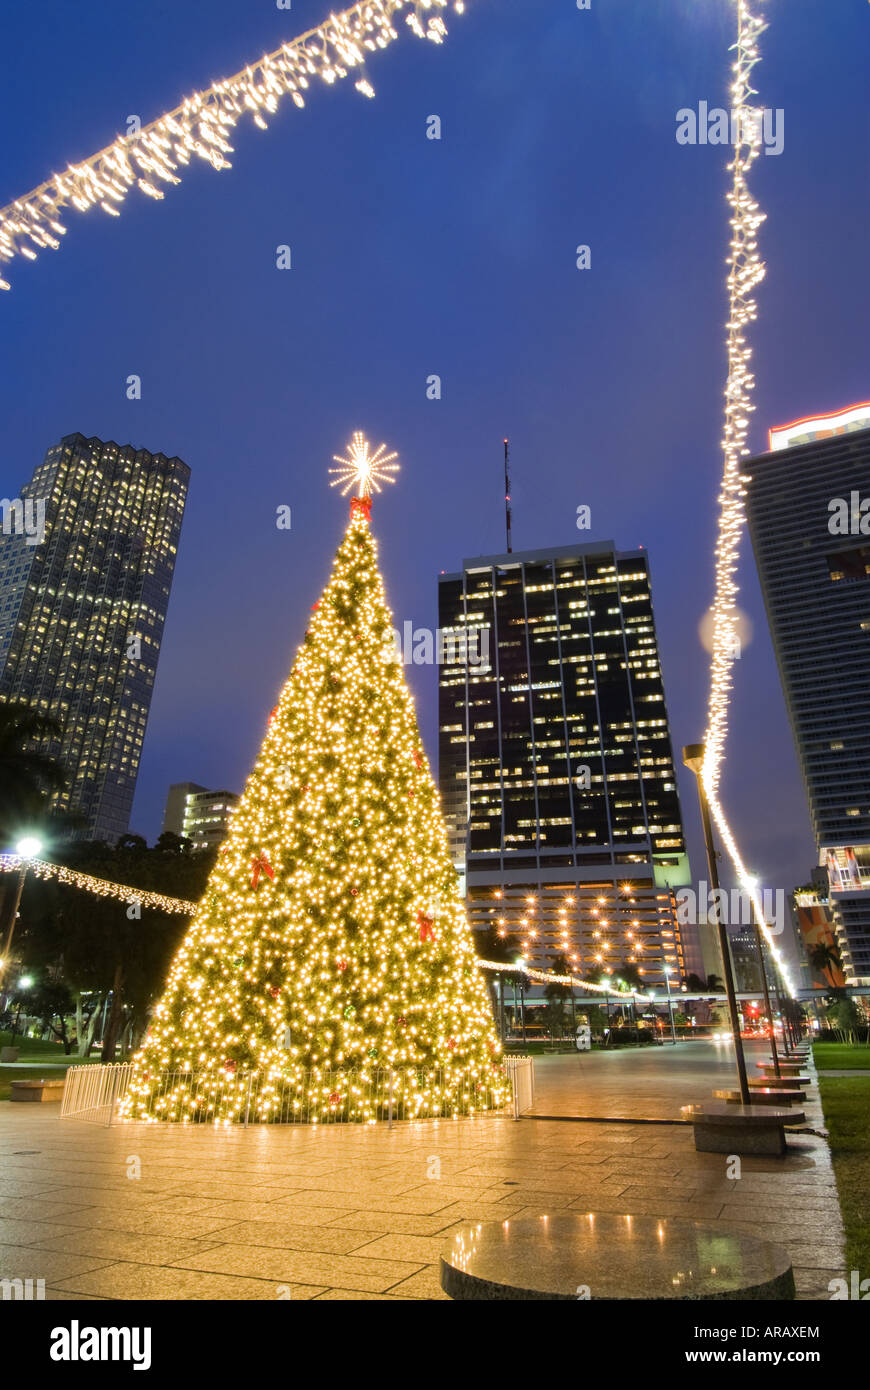 Natale Miami.Le Luci Di Natale Si Accendono Al Centro Cittadino Di Miami Florida Skyline Foto Stock Alamy